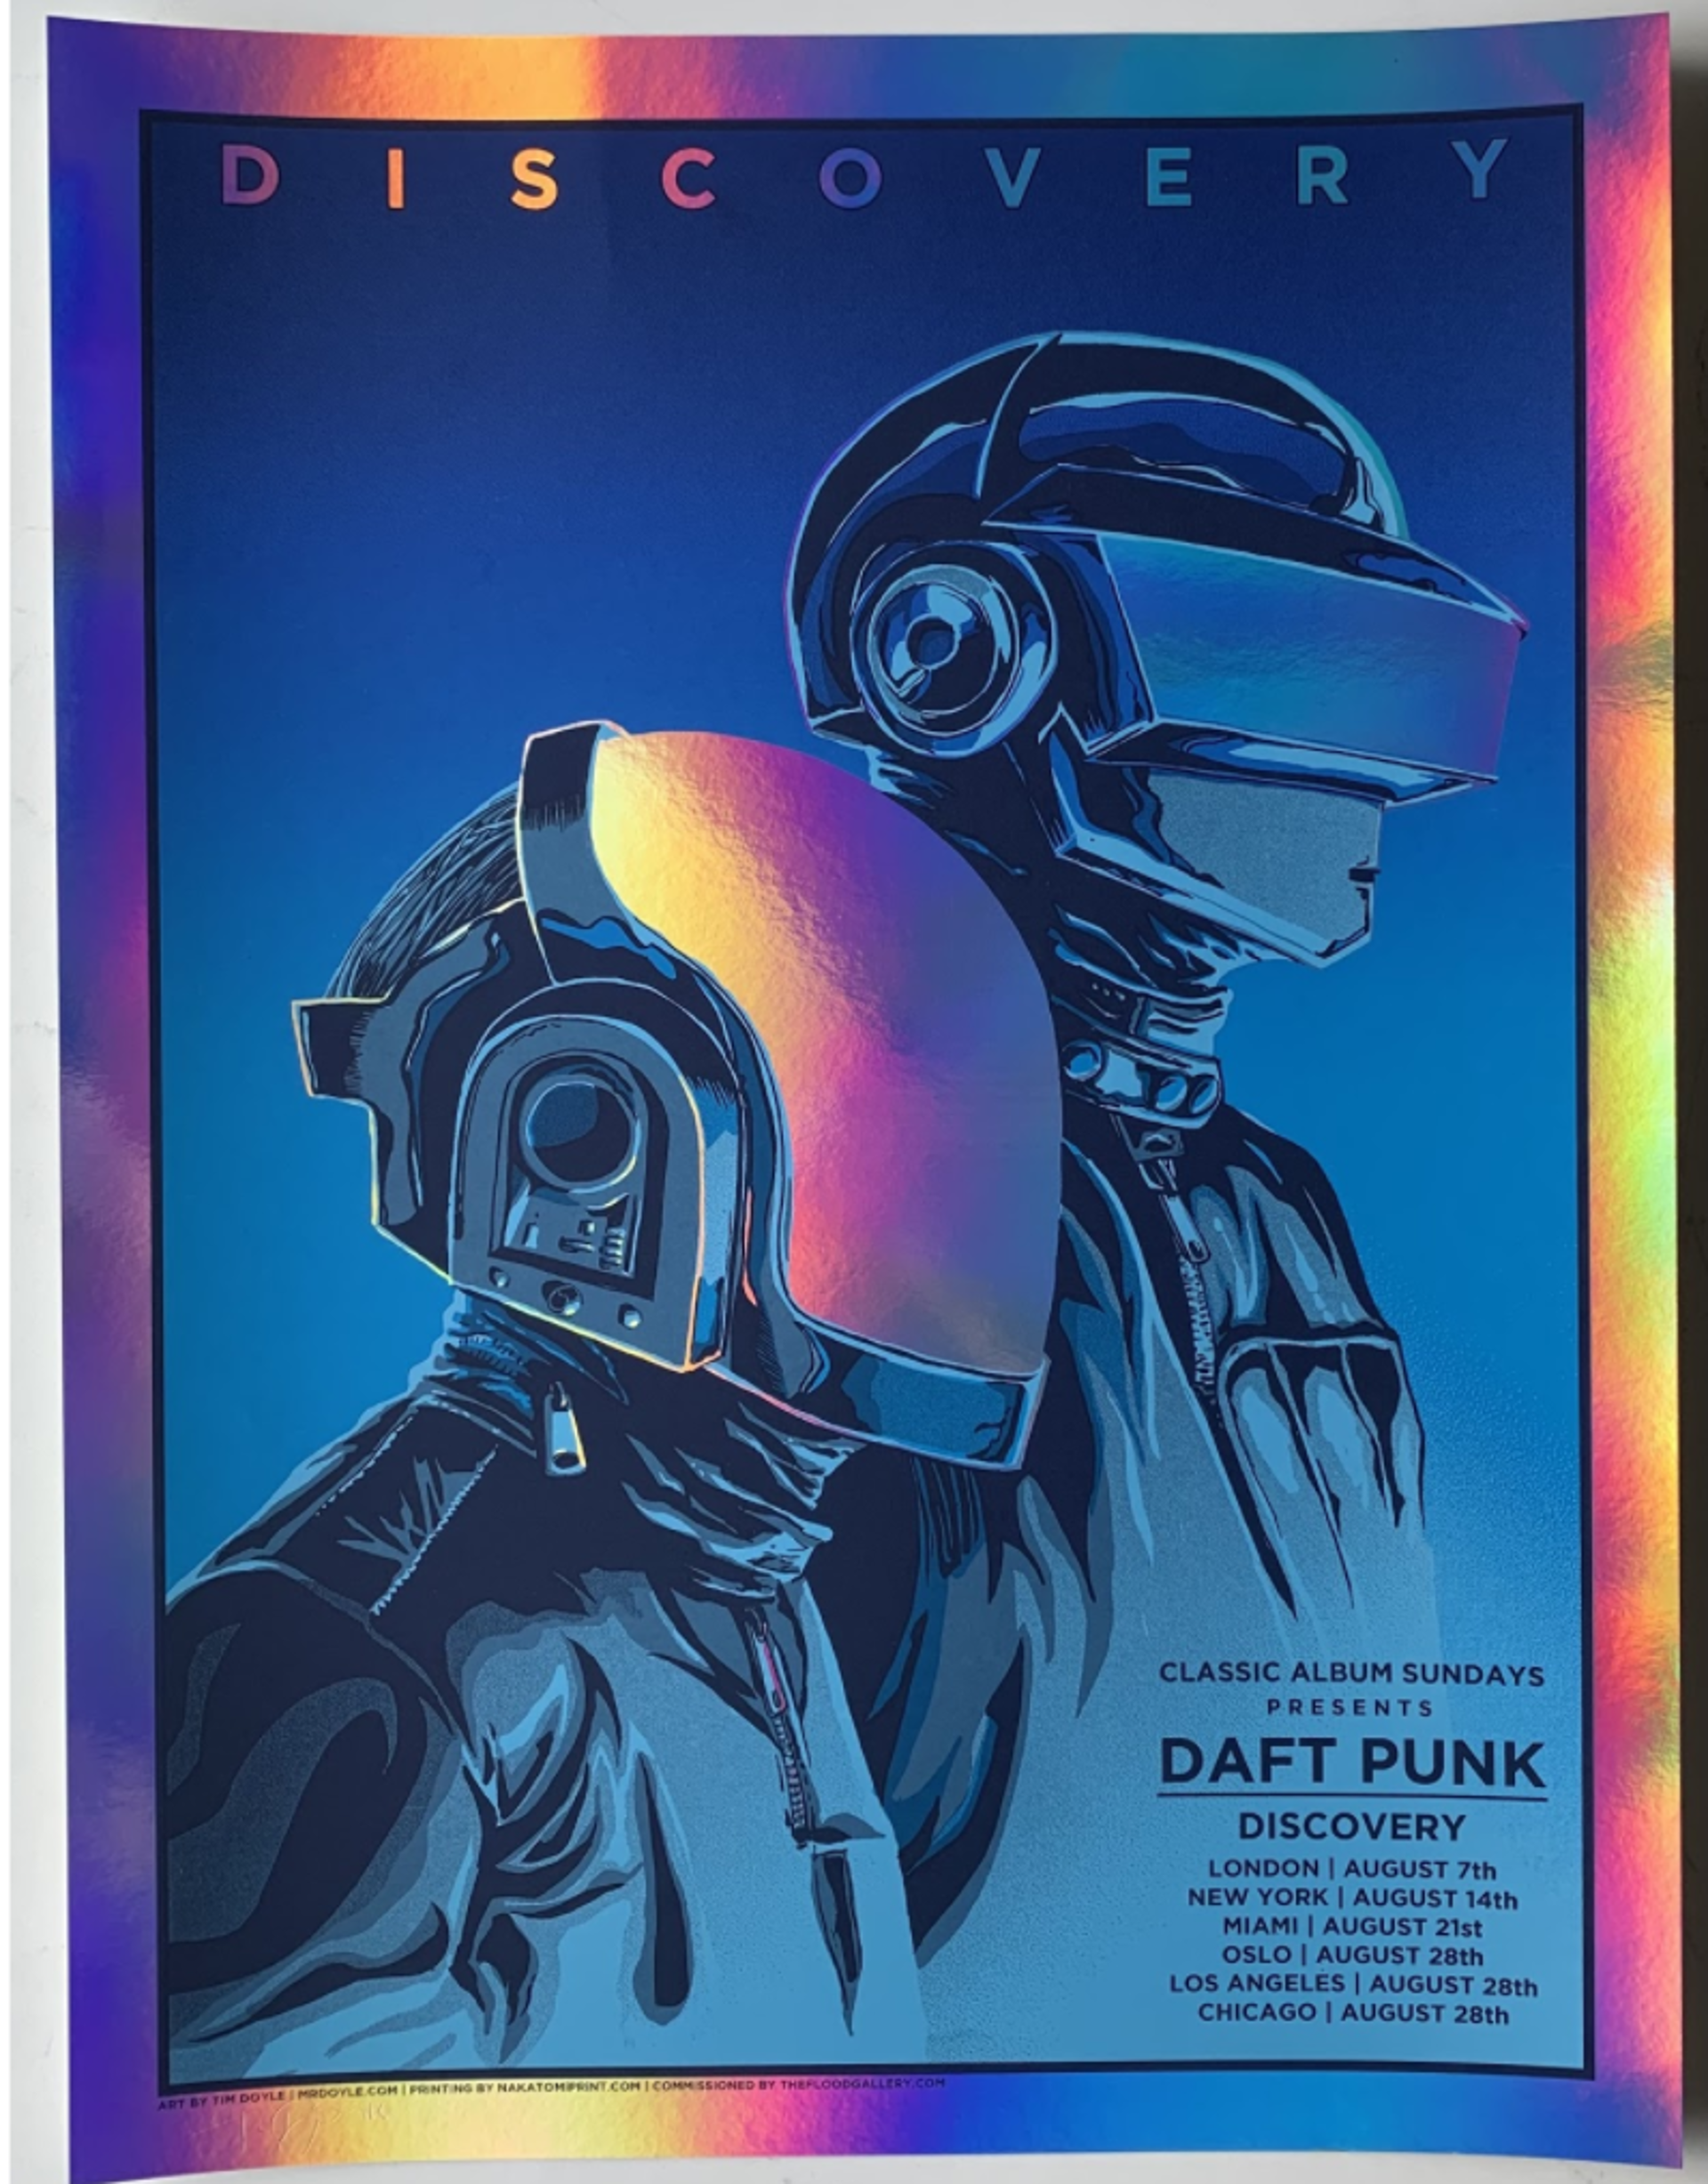 Daft Punk by Tim Doyle